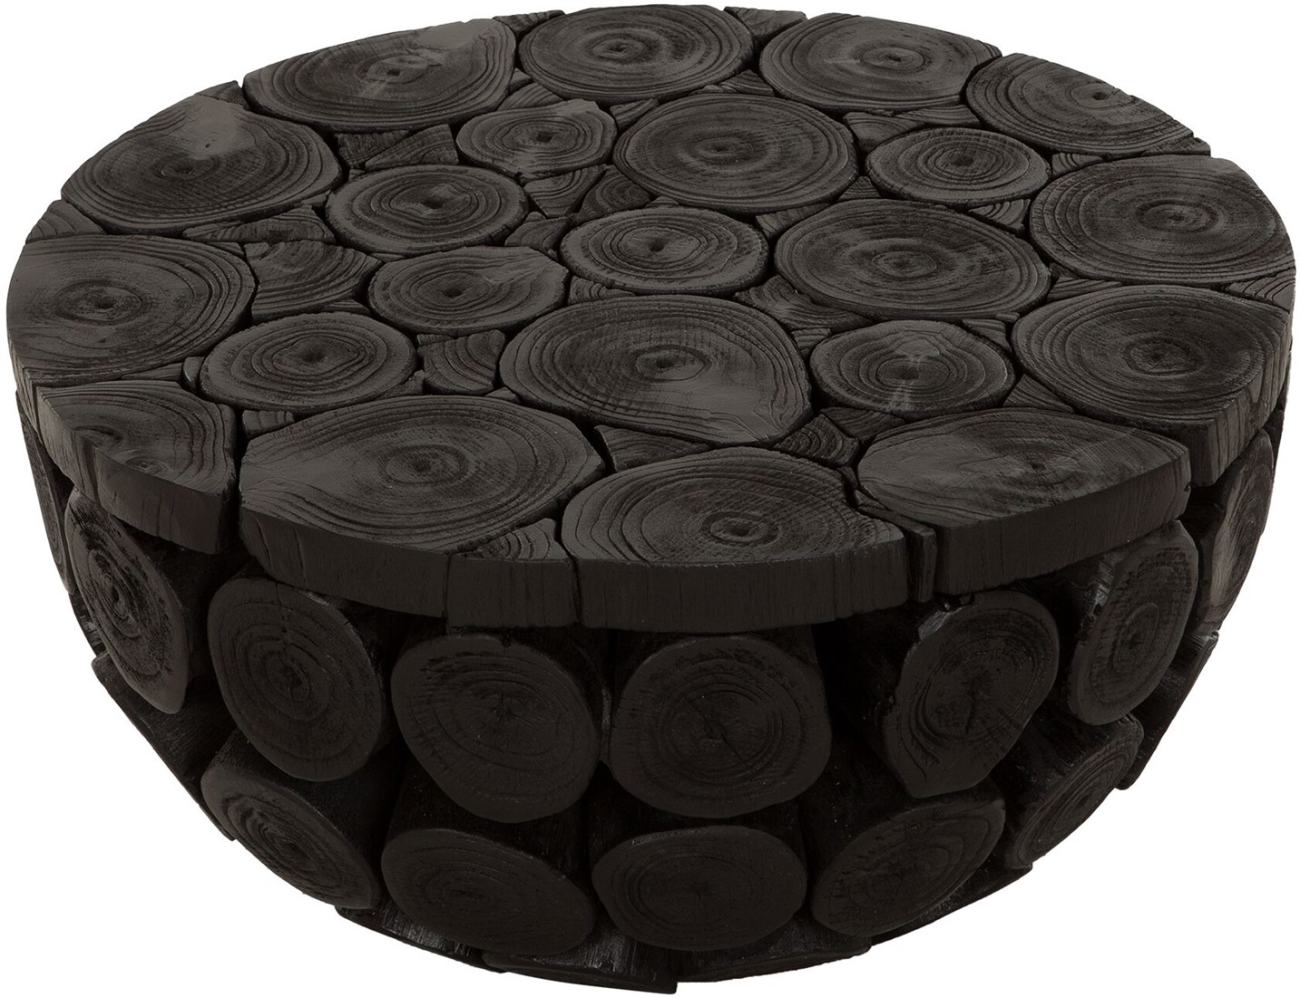 Der Couchtisch Cone überzeugt mit seinem modernen Design. Gefertigt wurde es aus recyceltem Teakholz, welches einen schwarzen Farbton besitzt. Der Couchtisch besitzt einen Durchmesser von 62 cm.